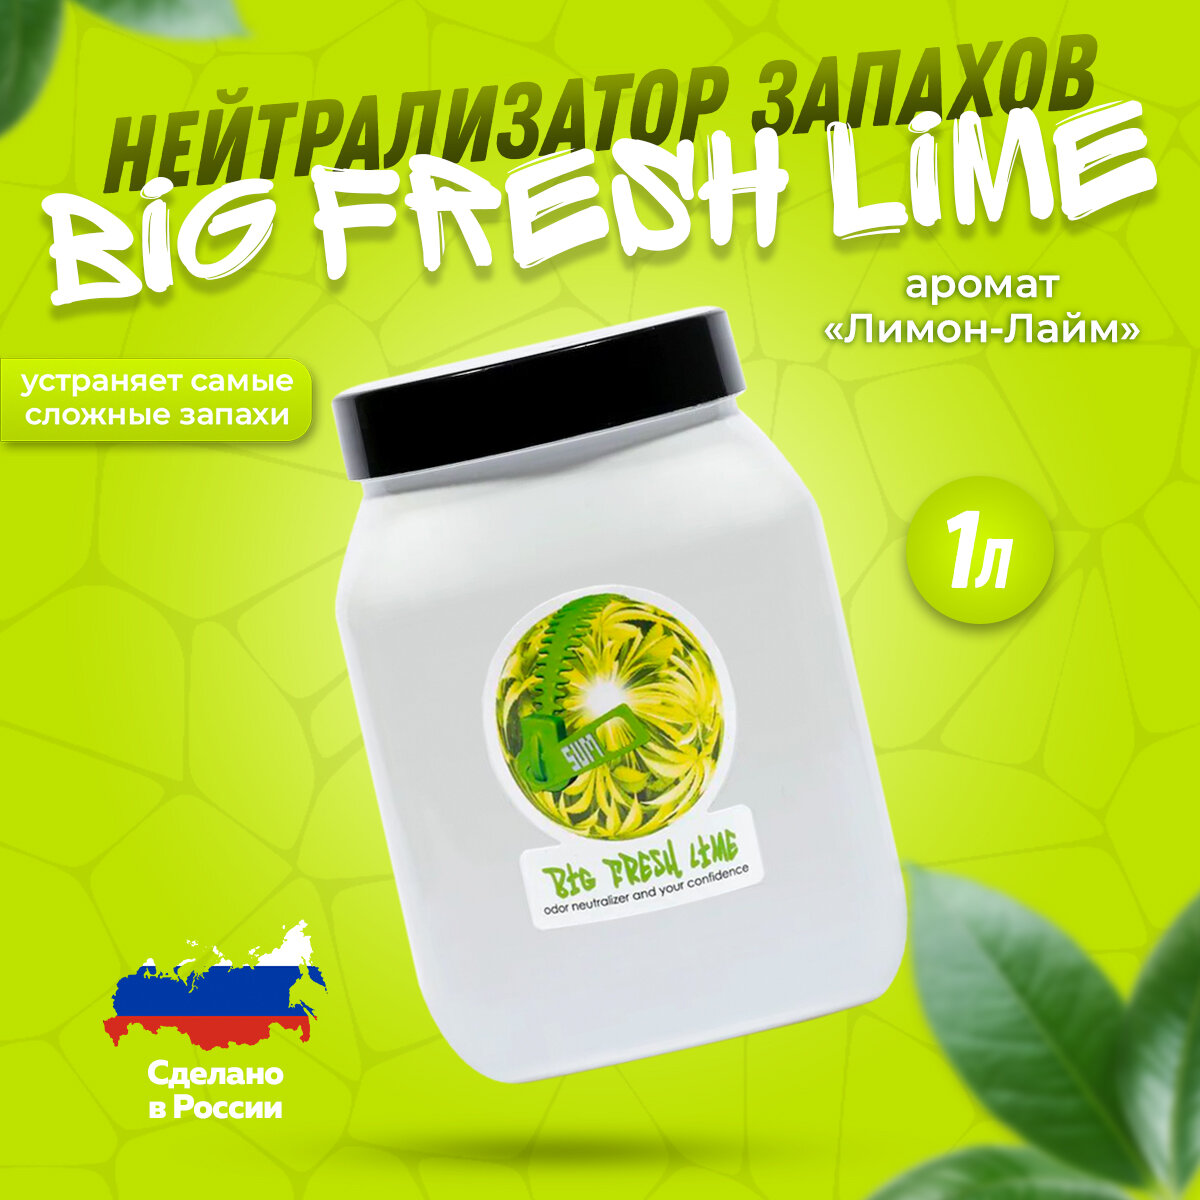 Нейтрализатор / Поглотитель запаха SUMO Big Fresh Lime Gel 1L (лимон-лайм) / Освежитель воздуха